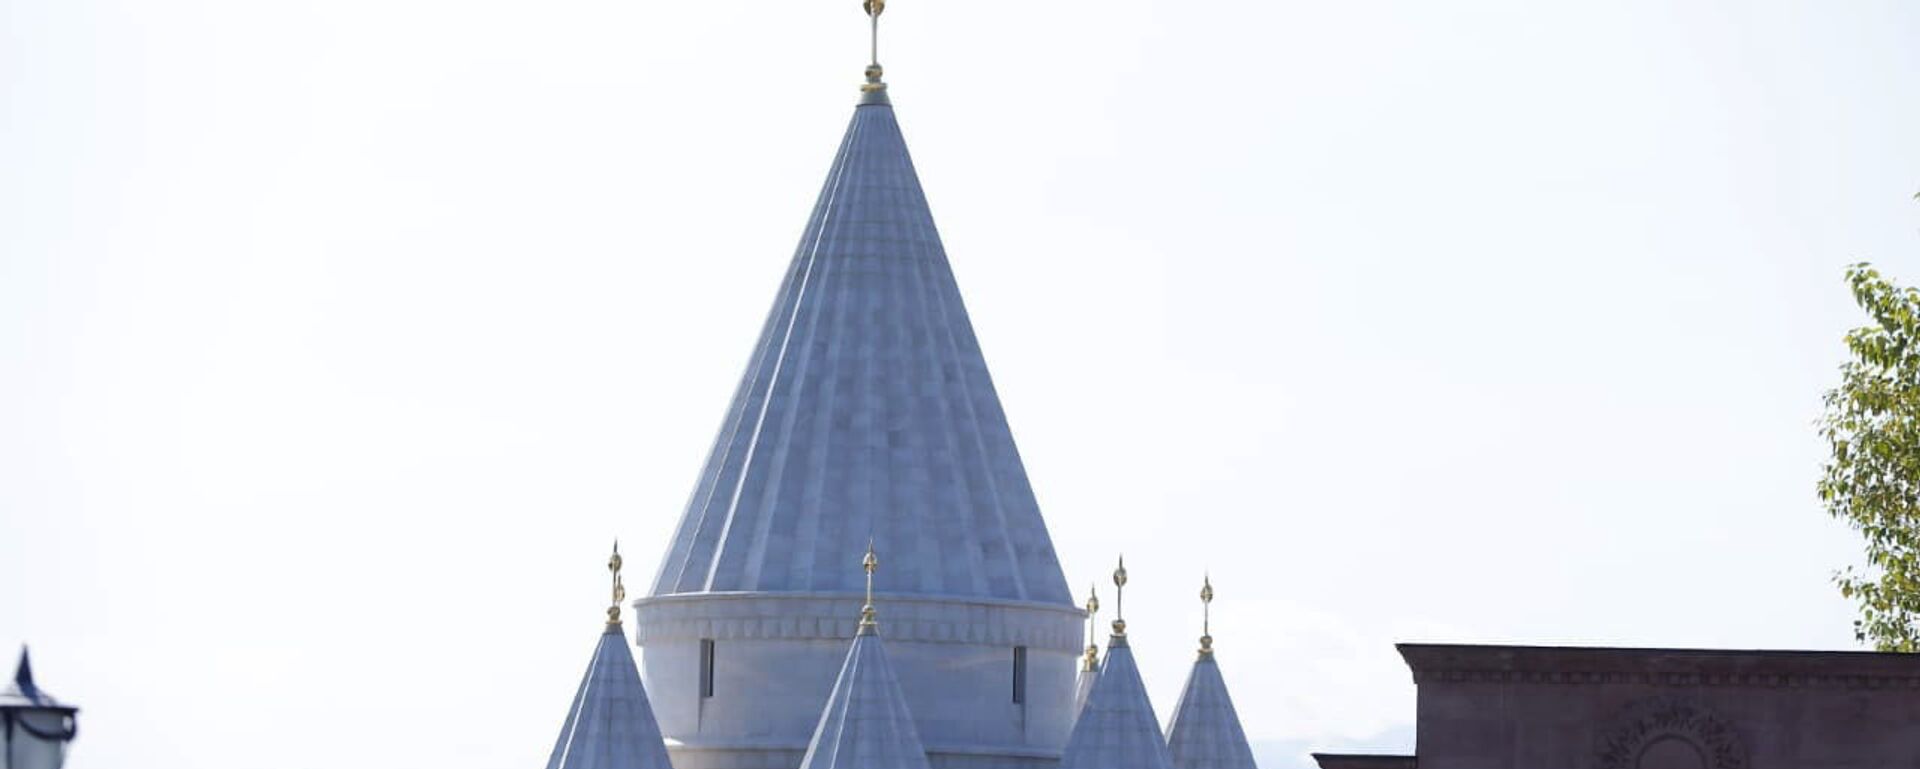 Езидский храм в Армавирской области Армении - Sputnik Армения, 1920, 02.05.2021